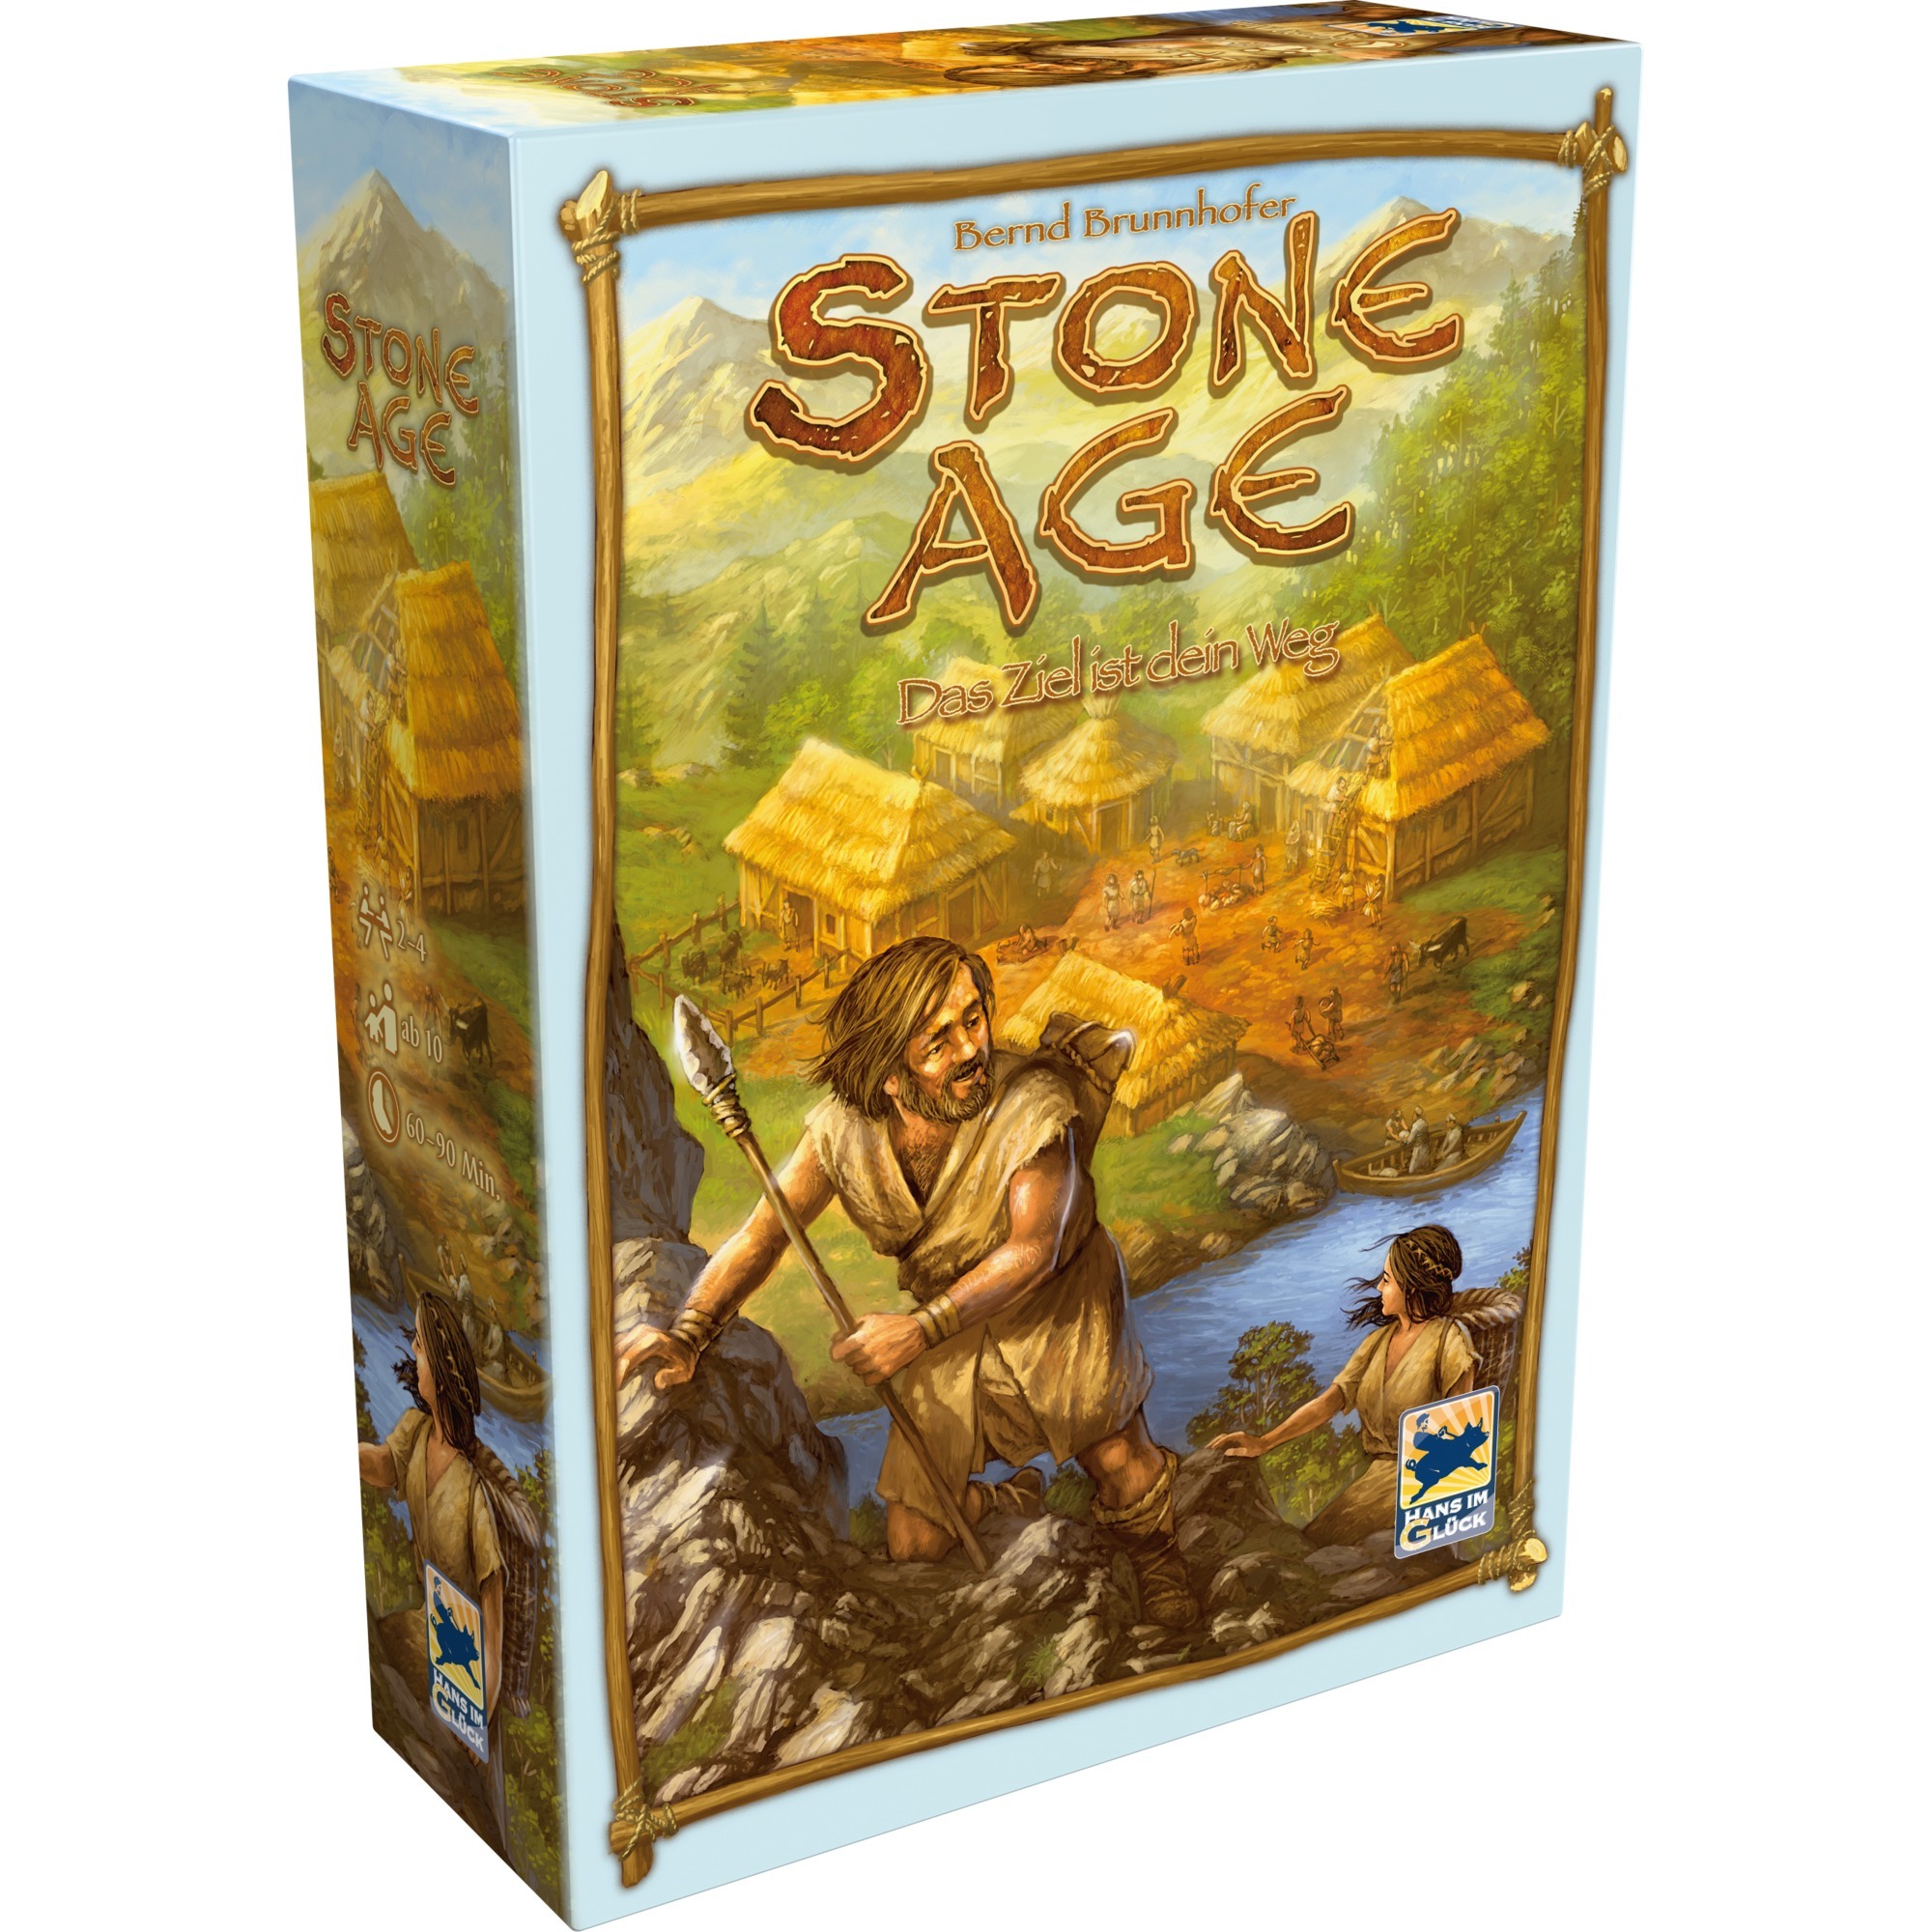 Image of Alternate - Stone Age: Das Ziel ist dein Weg, Brettspiel online einkaufen bei Alternate